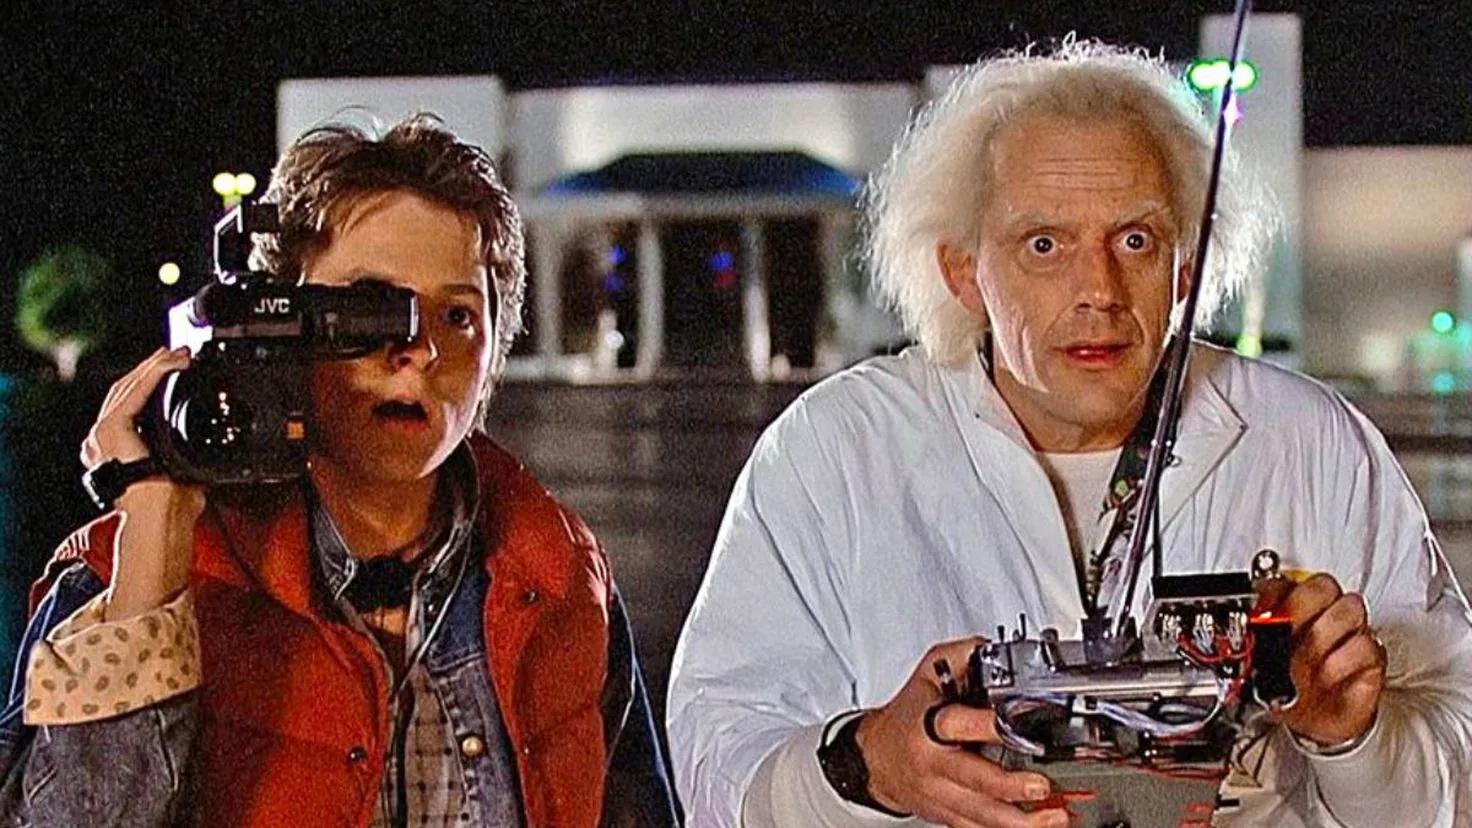 el tren de volver al futuro - Qué día Marty McFly viaja al futuro